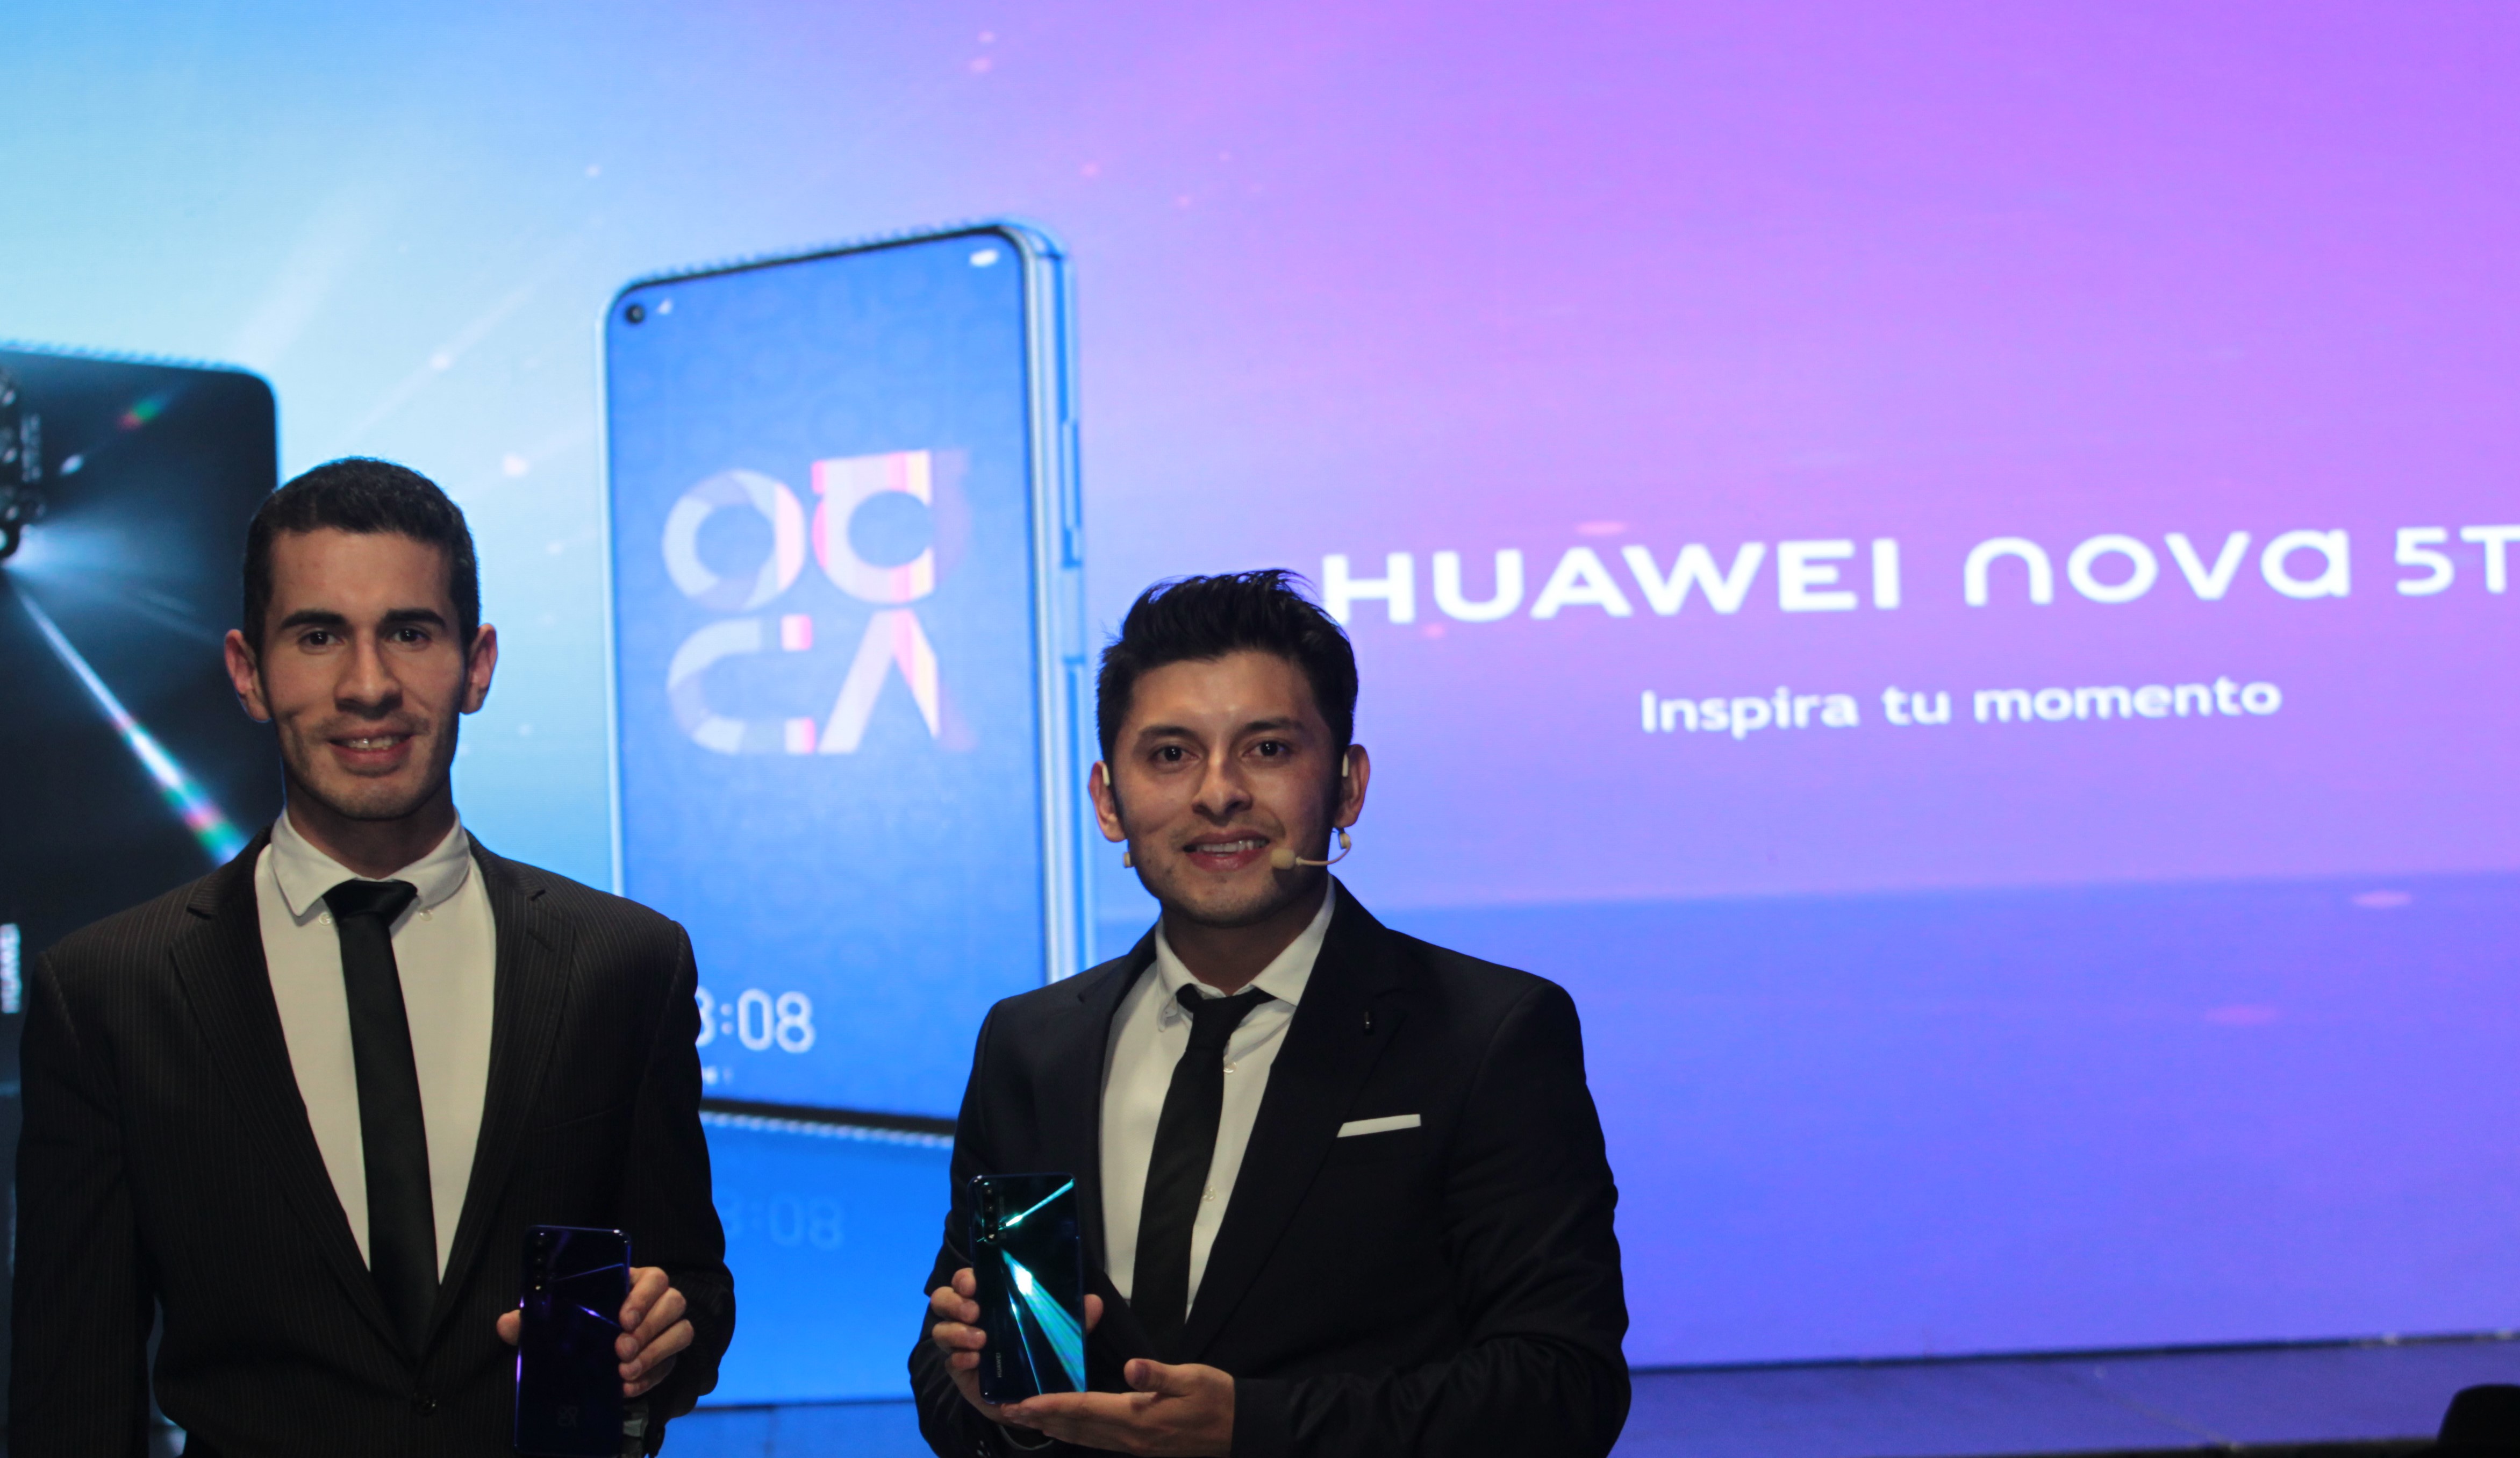 Representantes de Huawei Guatemala mostraron el nuevo Smartphone. Foto Prensa Libre: Norvin Mendoza